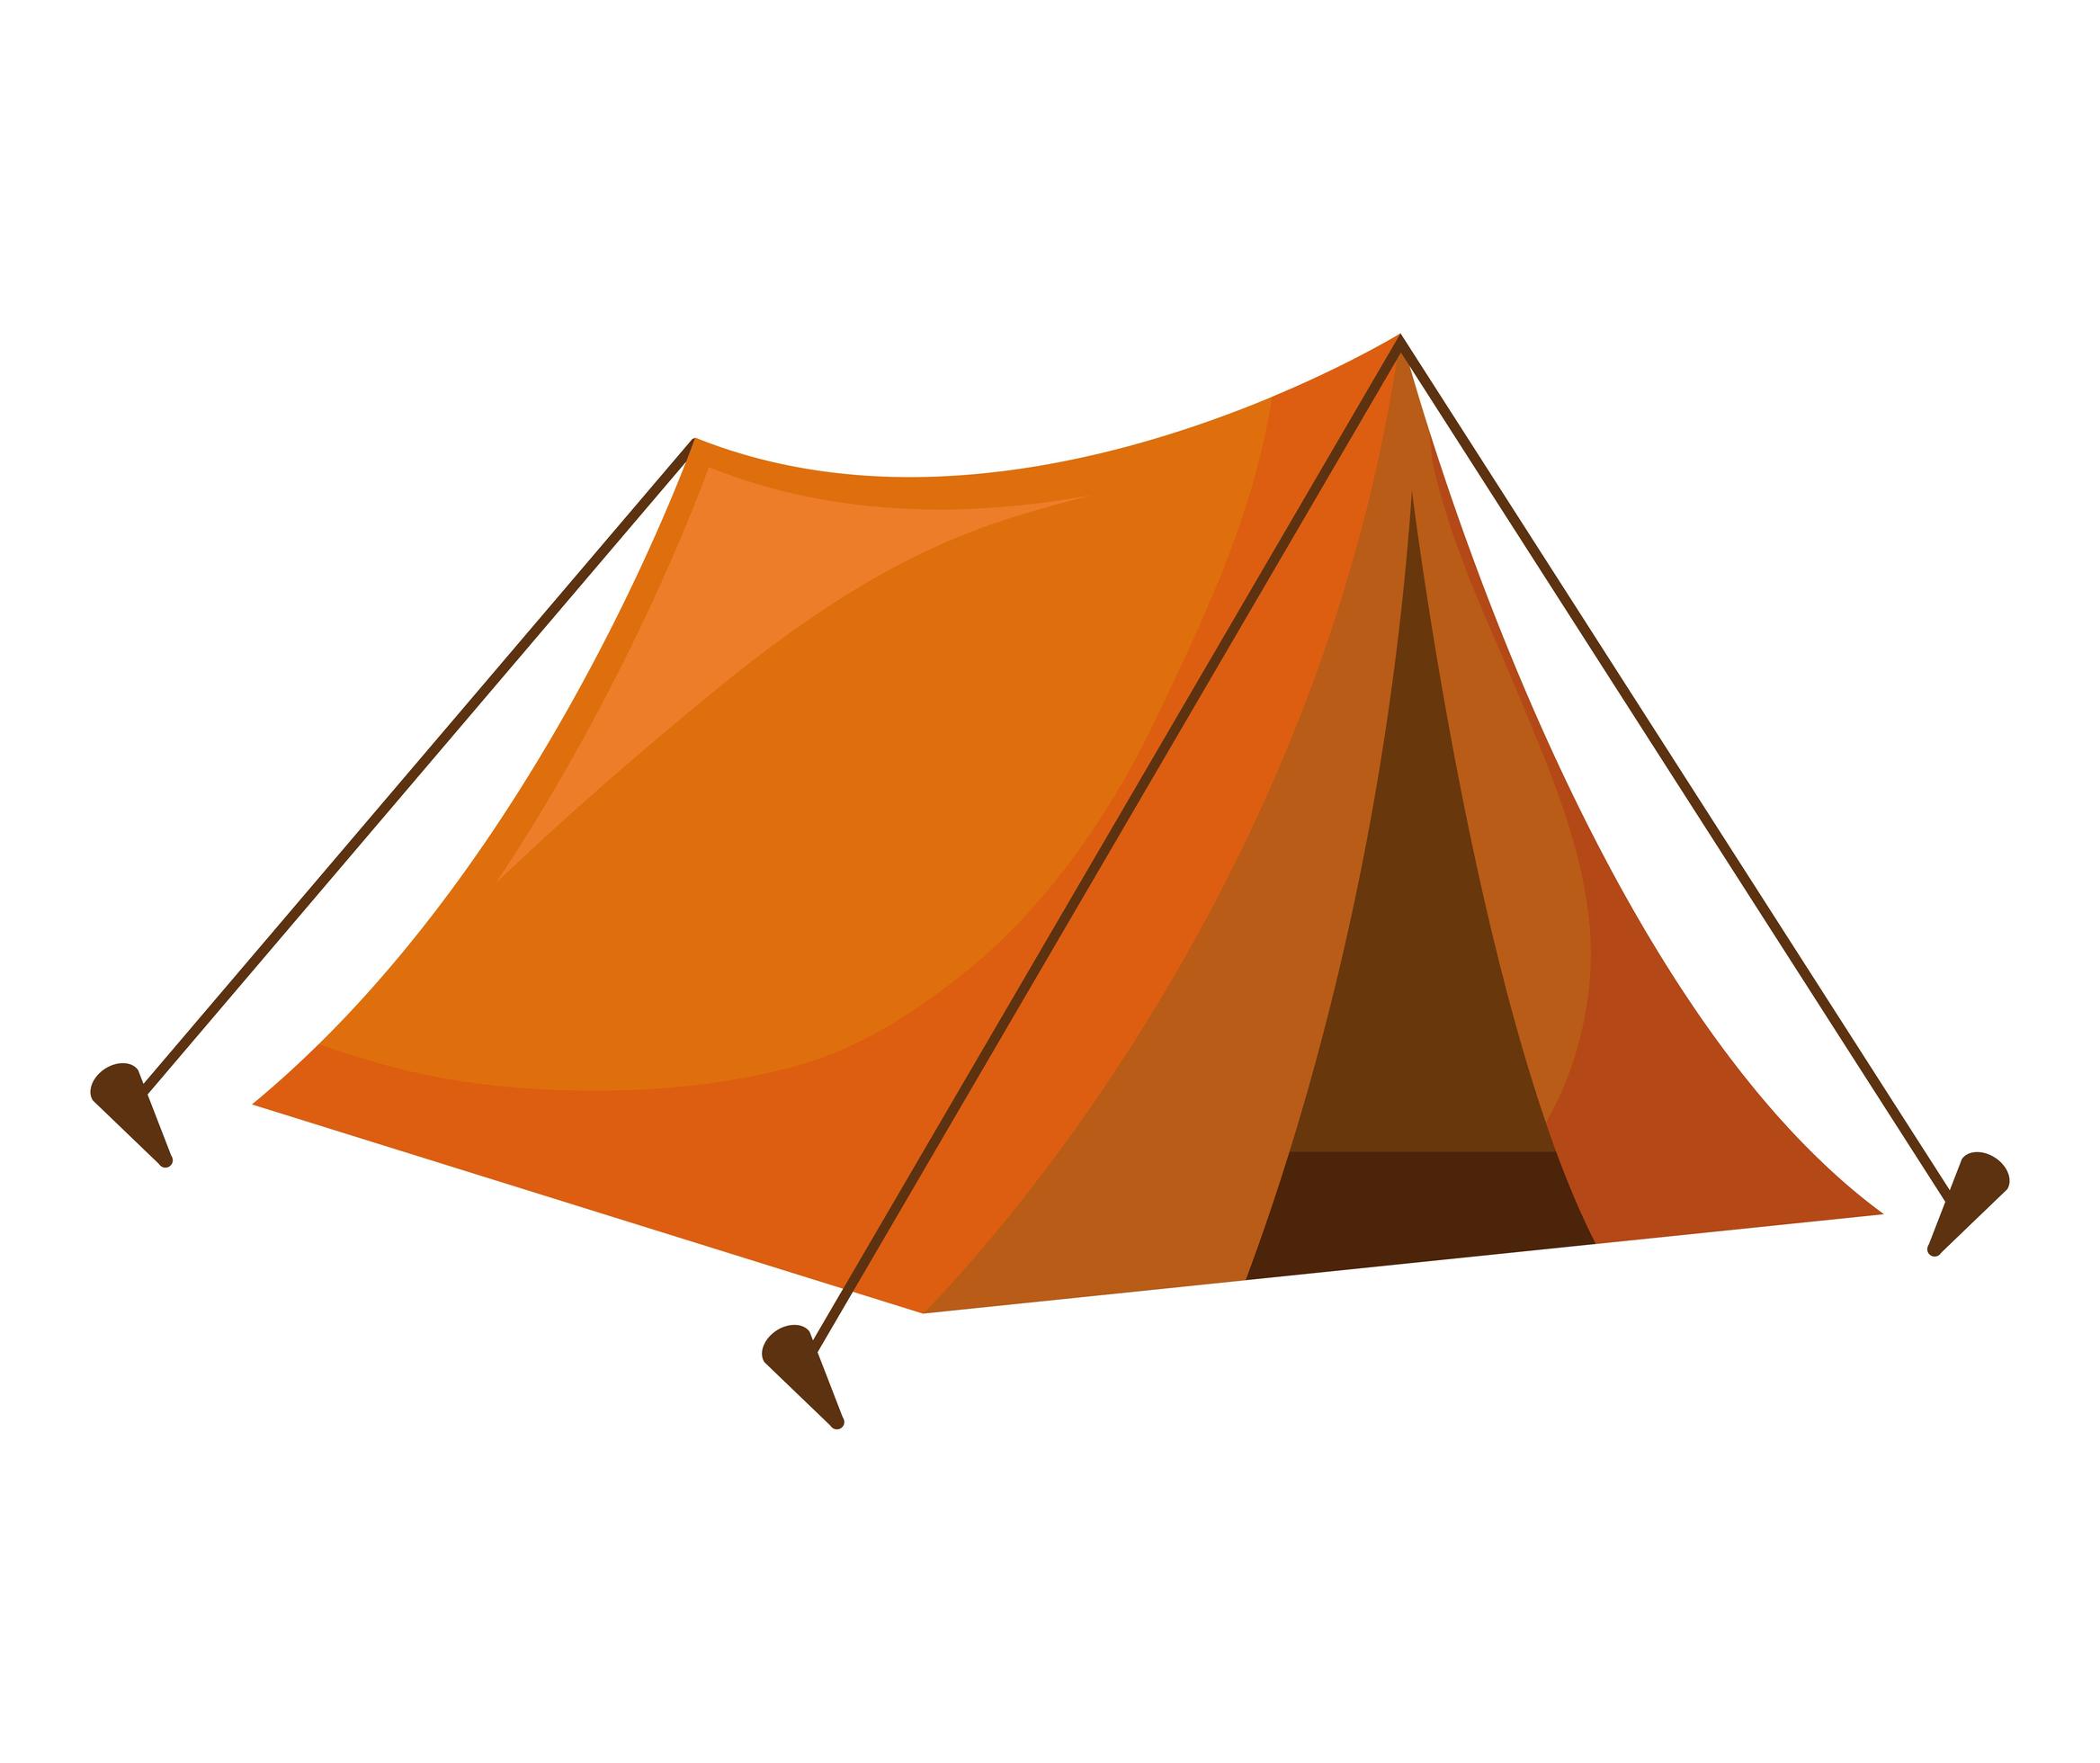 orange tent icon 2748497 Vector Art at Vecteezy